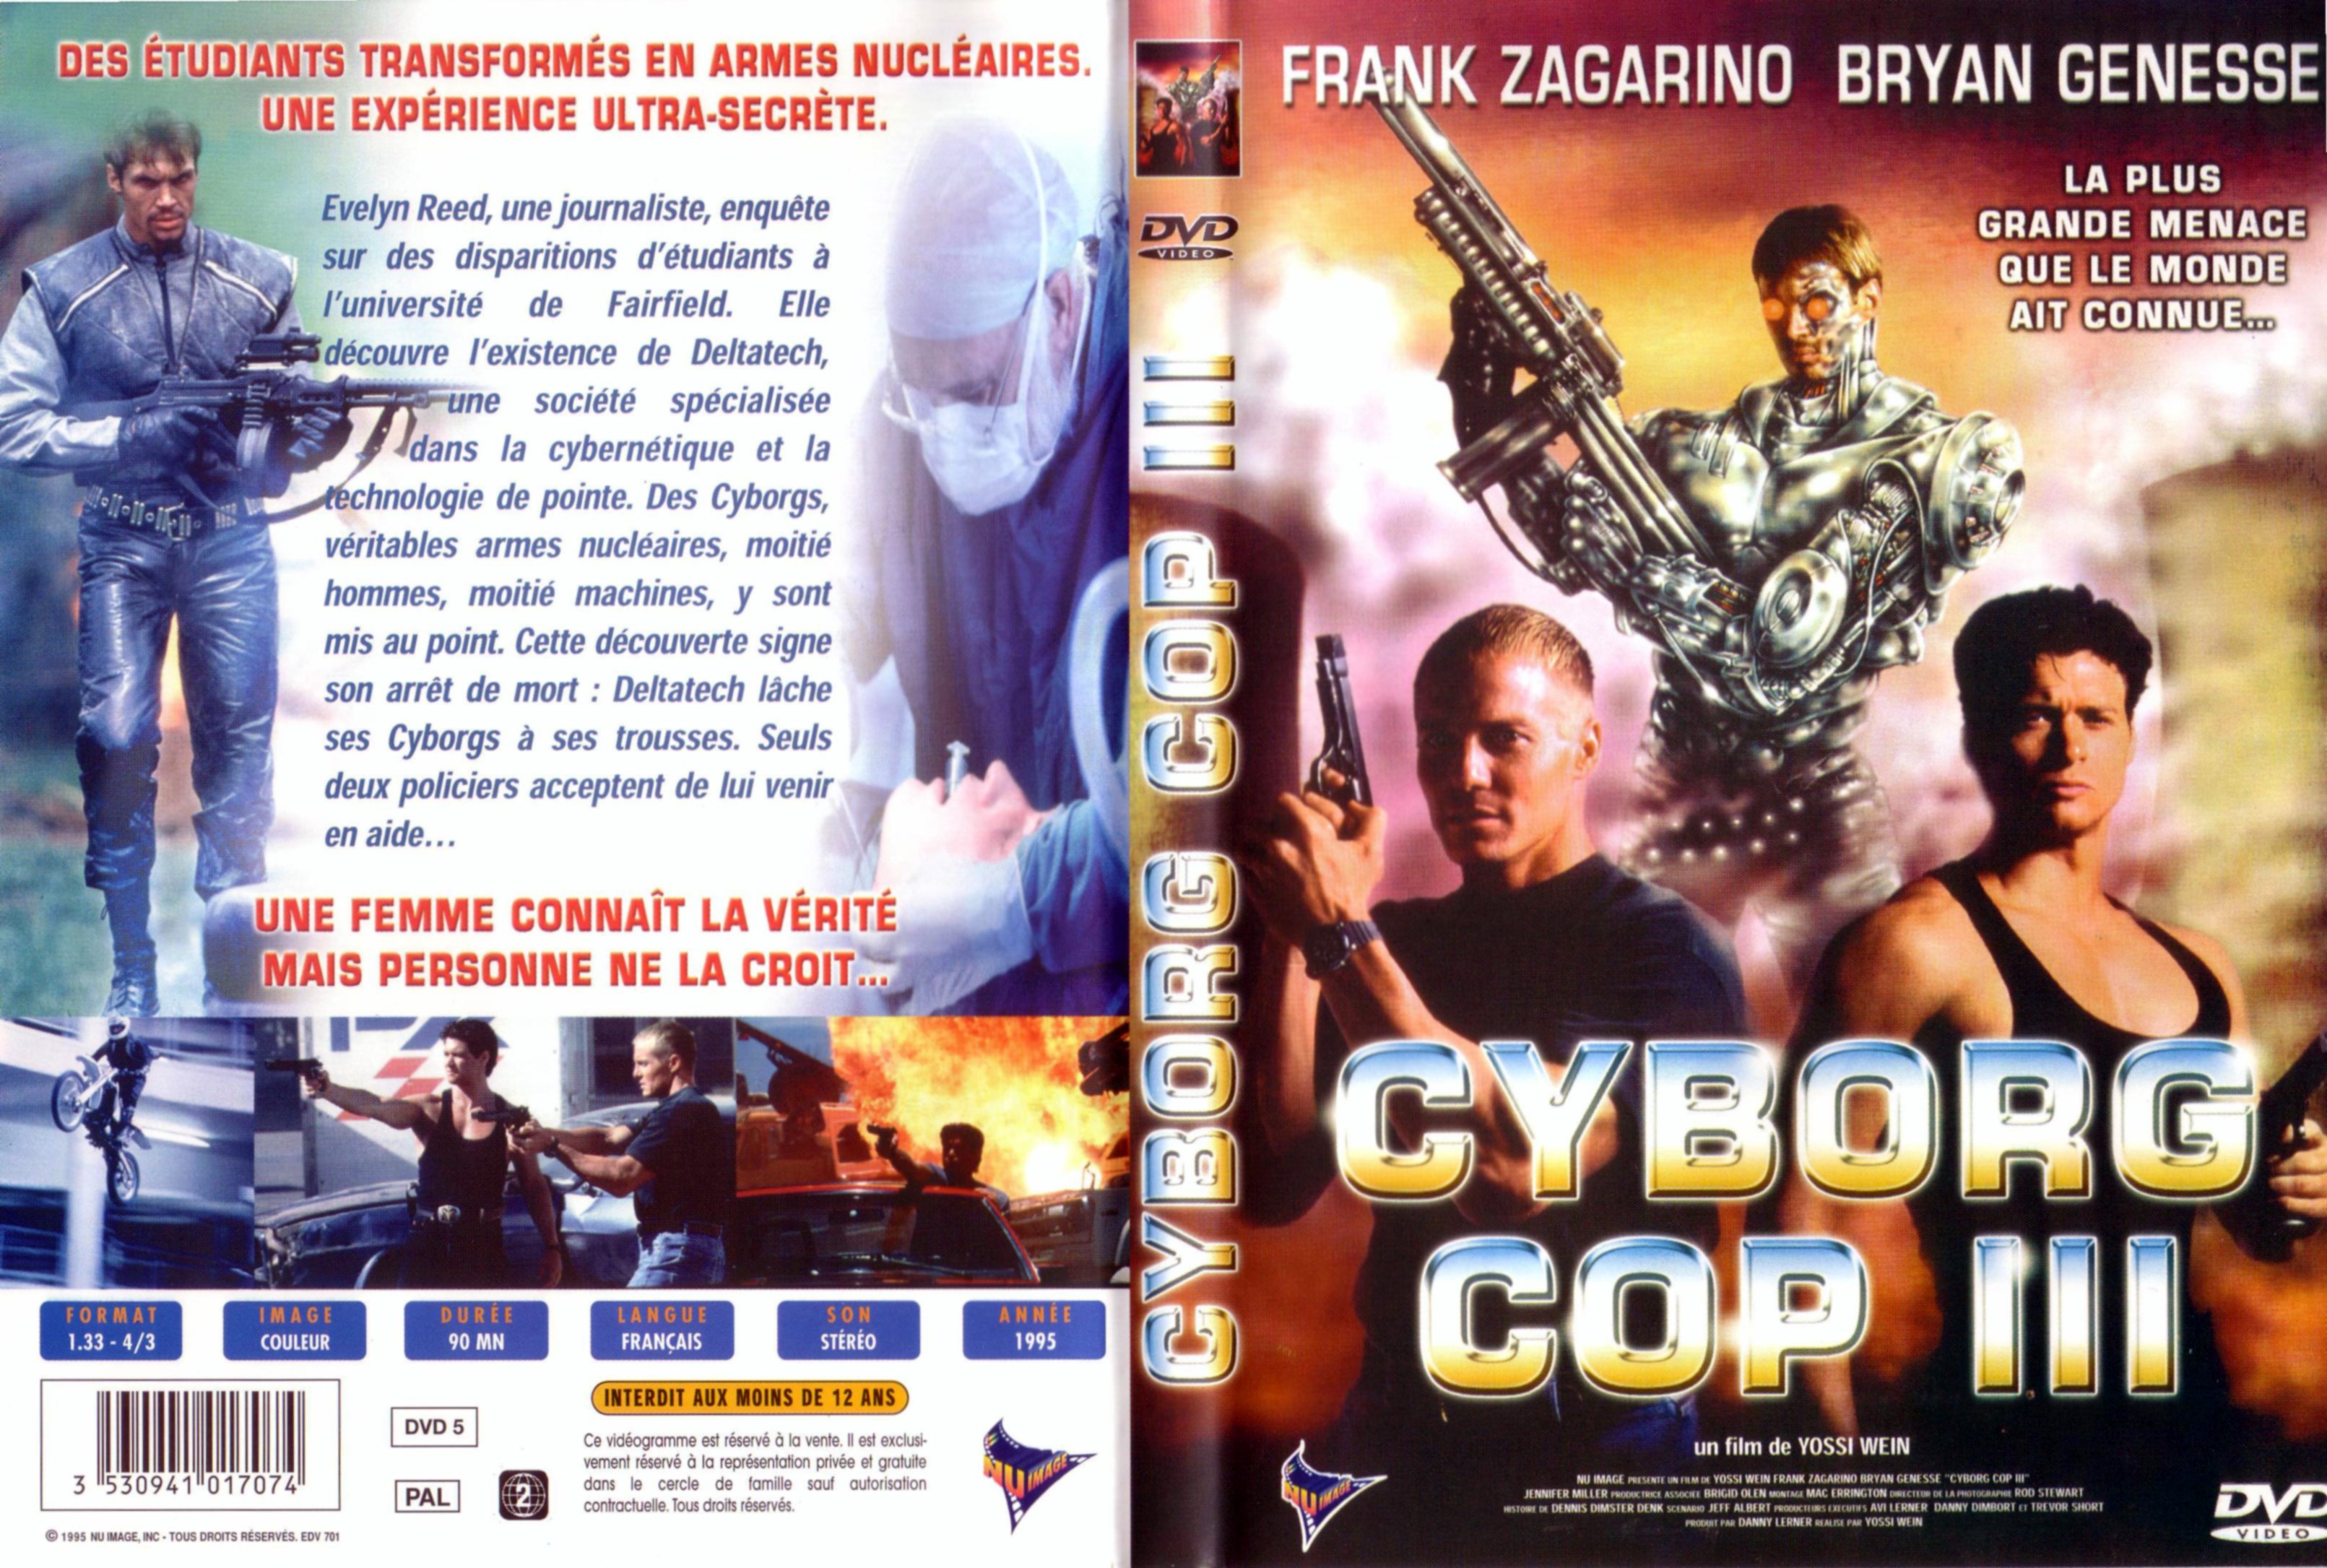 Jaquette DVD Cyborg cop 3